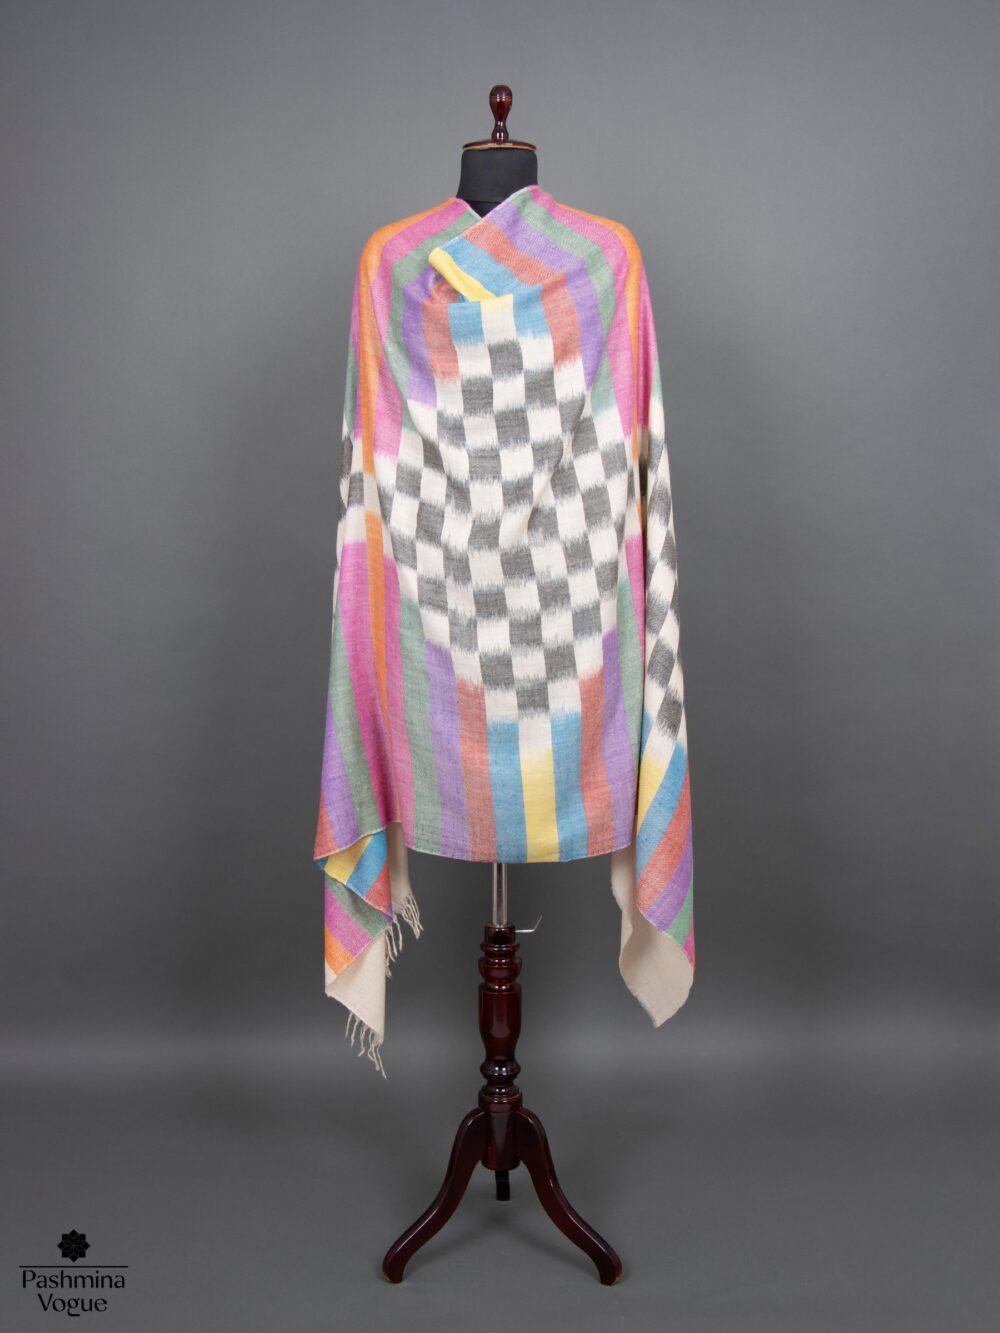 quality-pashmina-shawls-wholesale